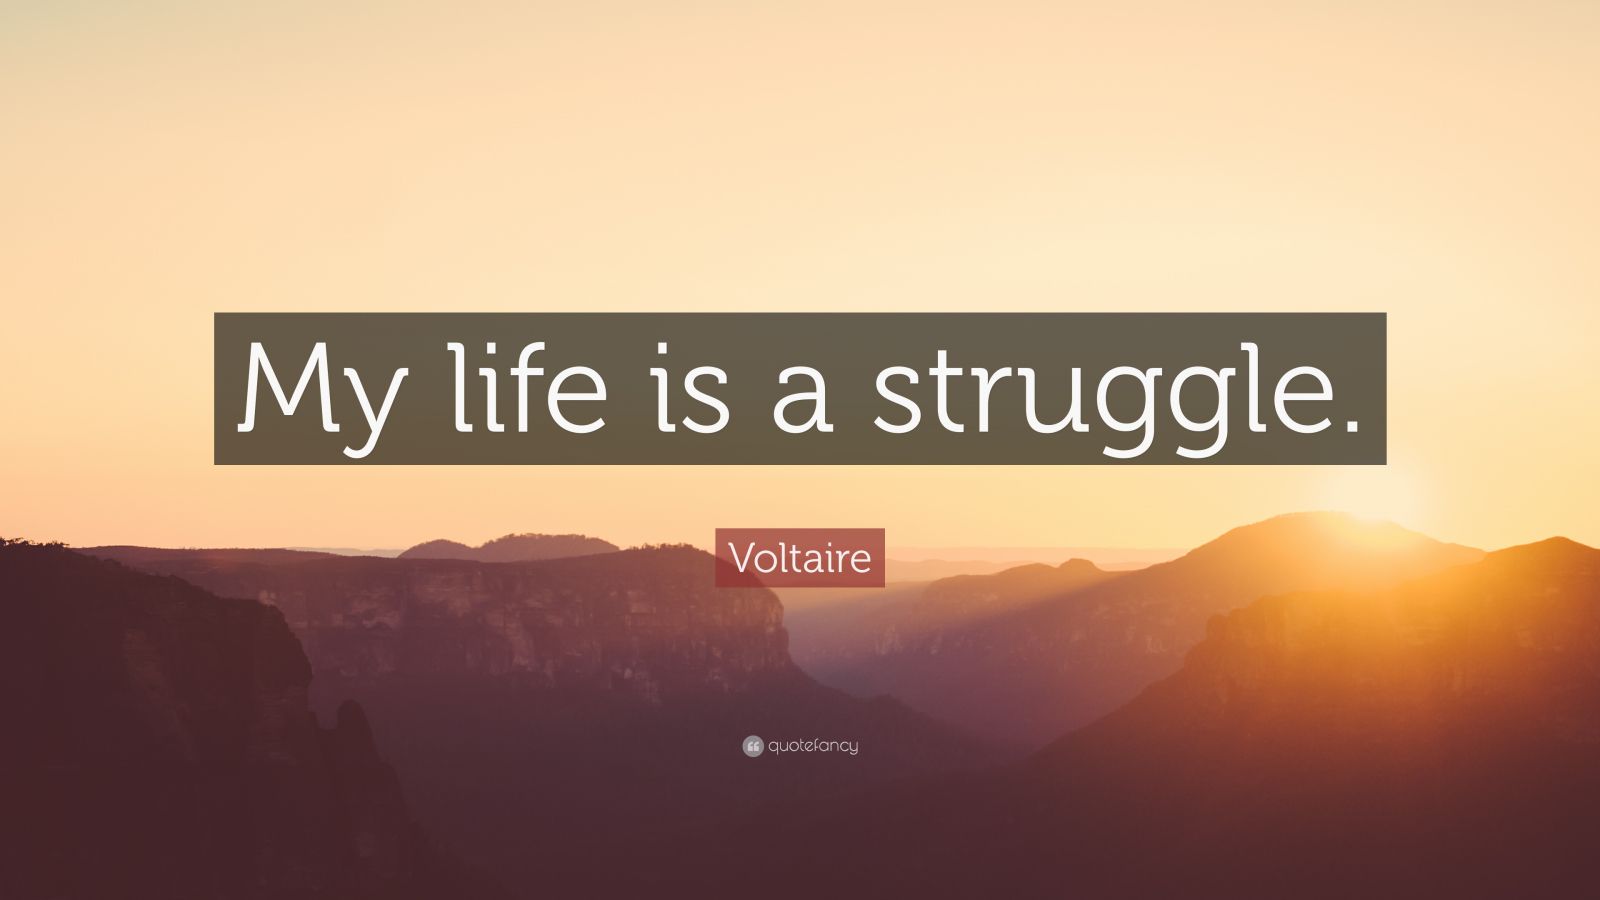 Voltaire Quote: 